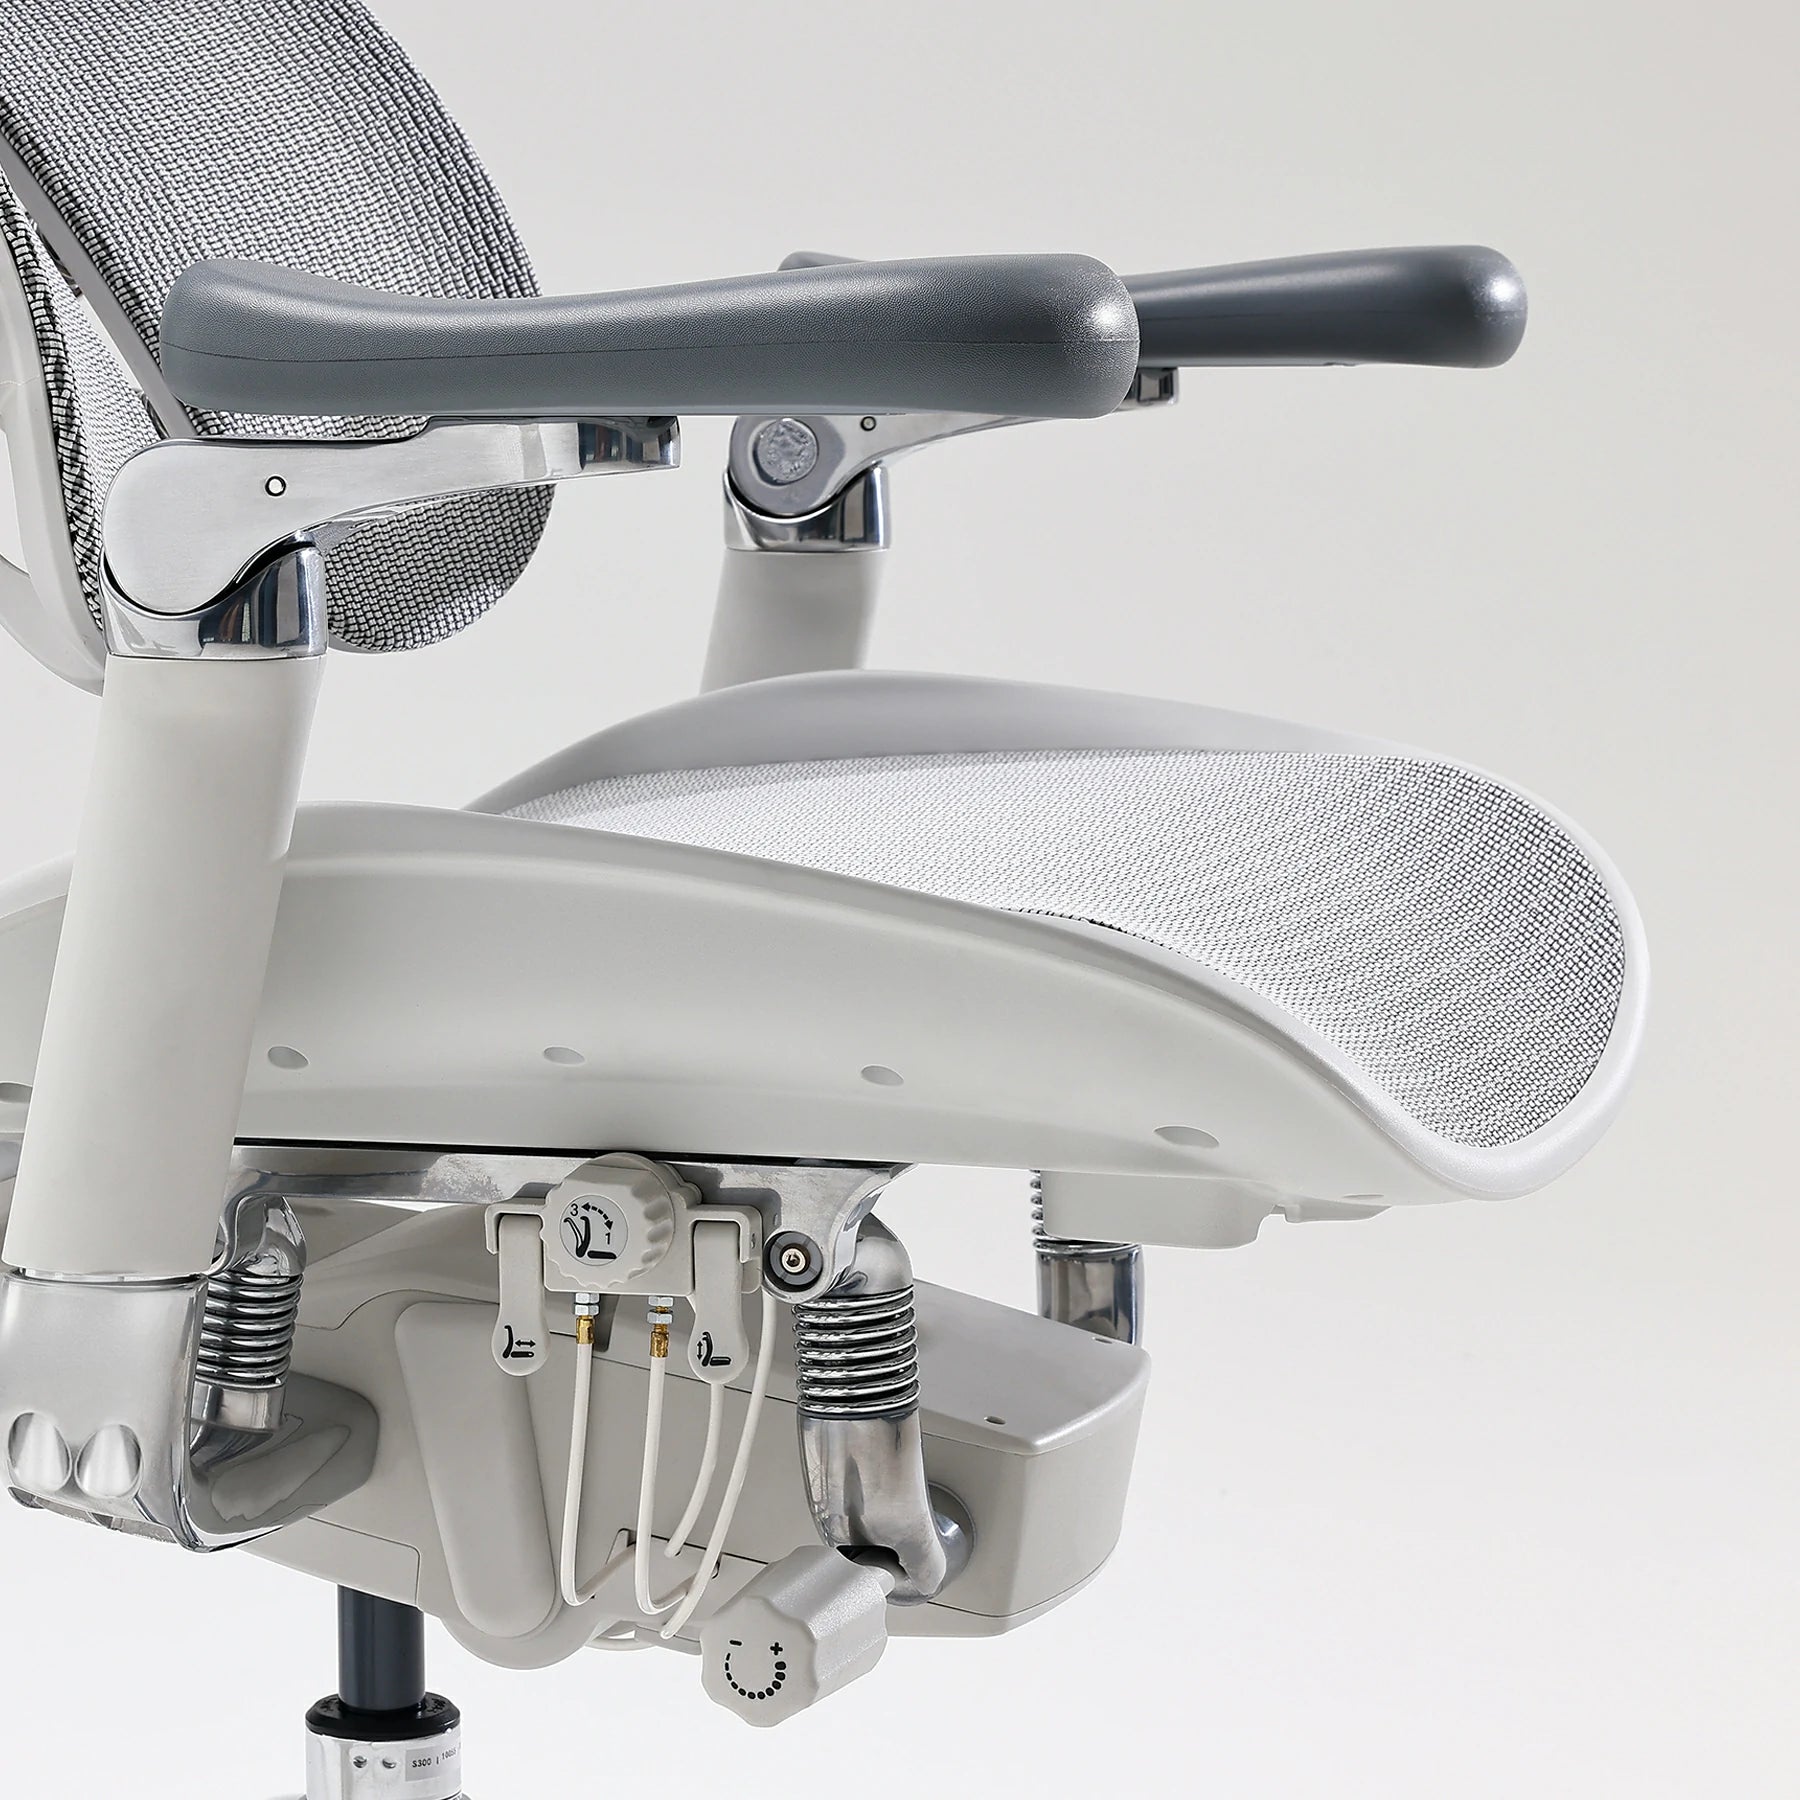 Sihoo Doro S300 "Gravity-Defying" Ergonomic Chair